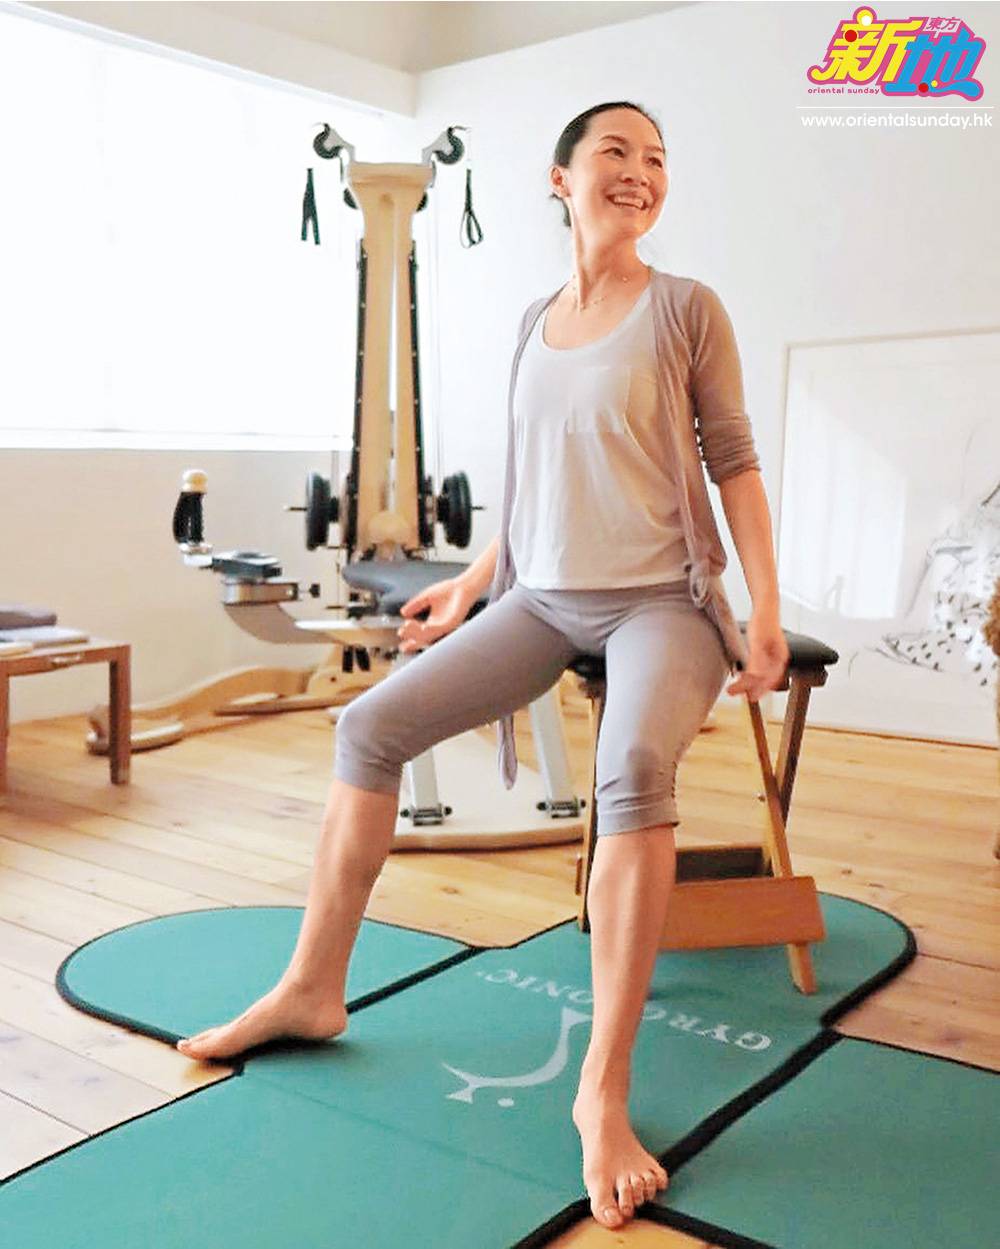  彭羚在家勤做運動正是現時外國好流行的Gyrokinesis運動又稱禪柔運動）及Gyrotonic運動又稱脊椎螺旋運動），她把專用的健身機放在私人健身房，仍有很闊落的活動空間。
